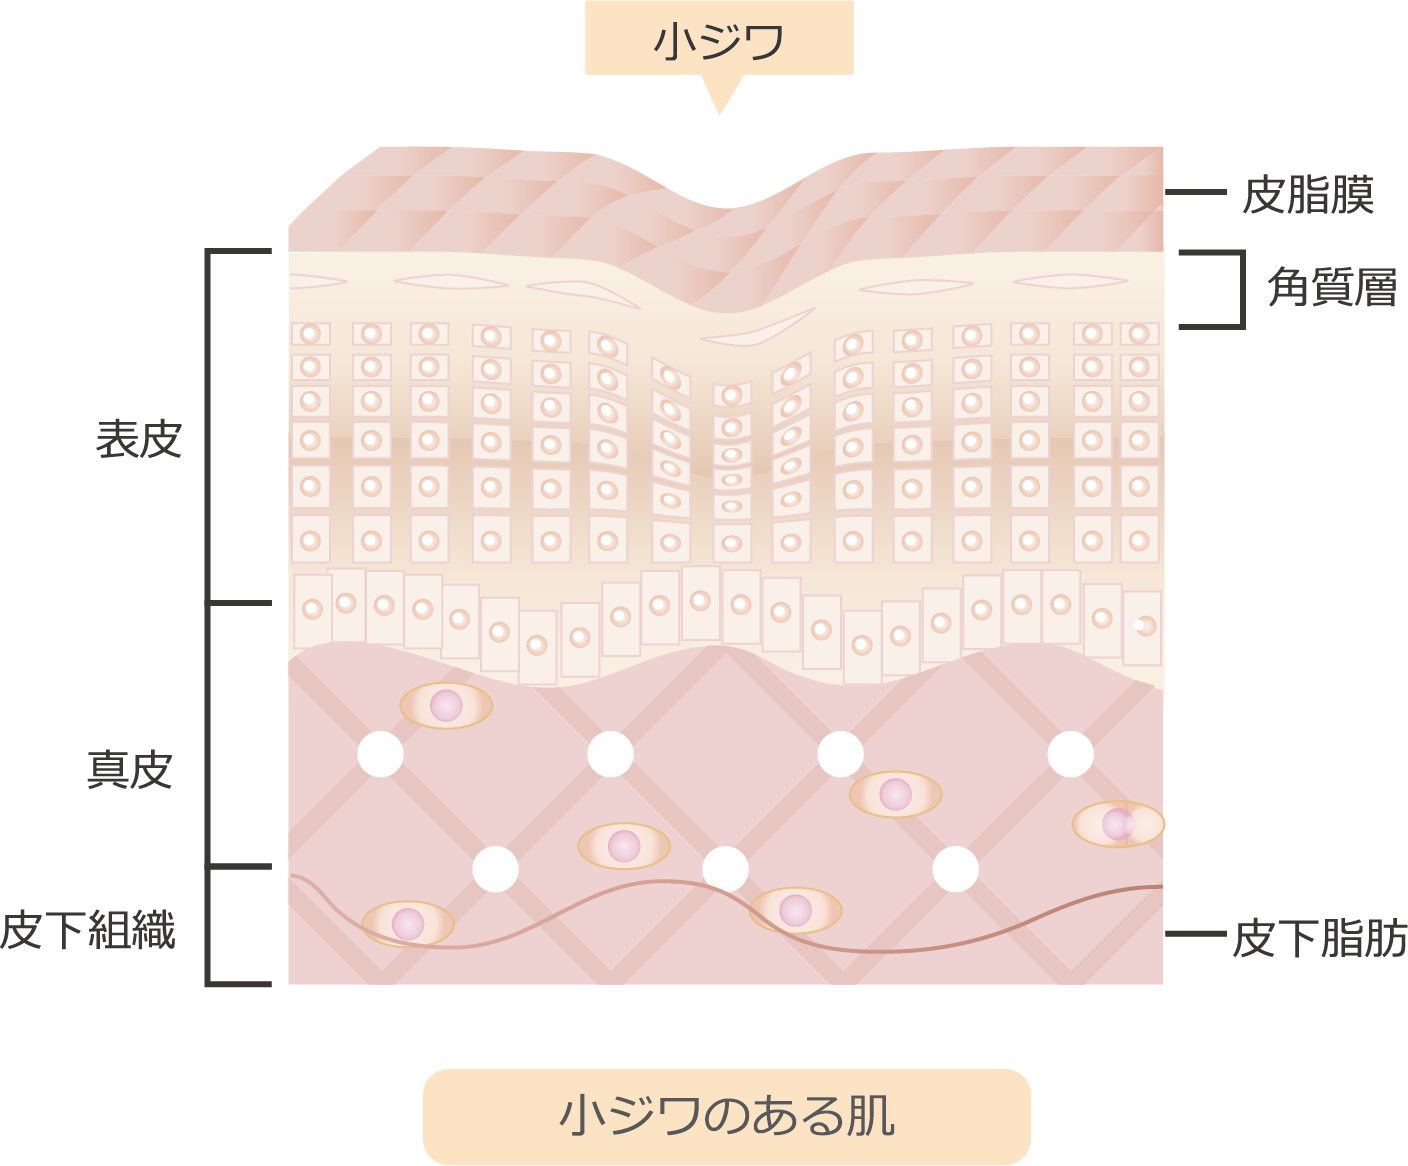 小ジワ 表皮 真皮 皮下組織 皮脂膜 角質層 皮下脂肪 小ジワのある肌